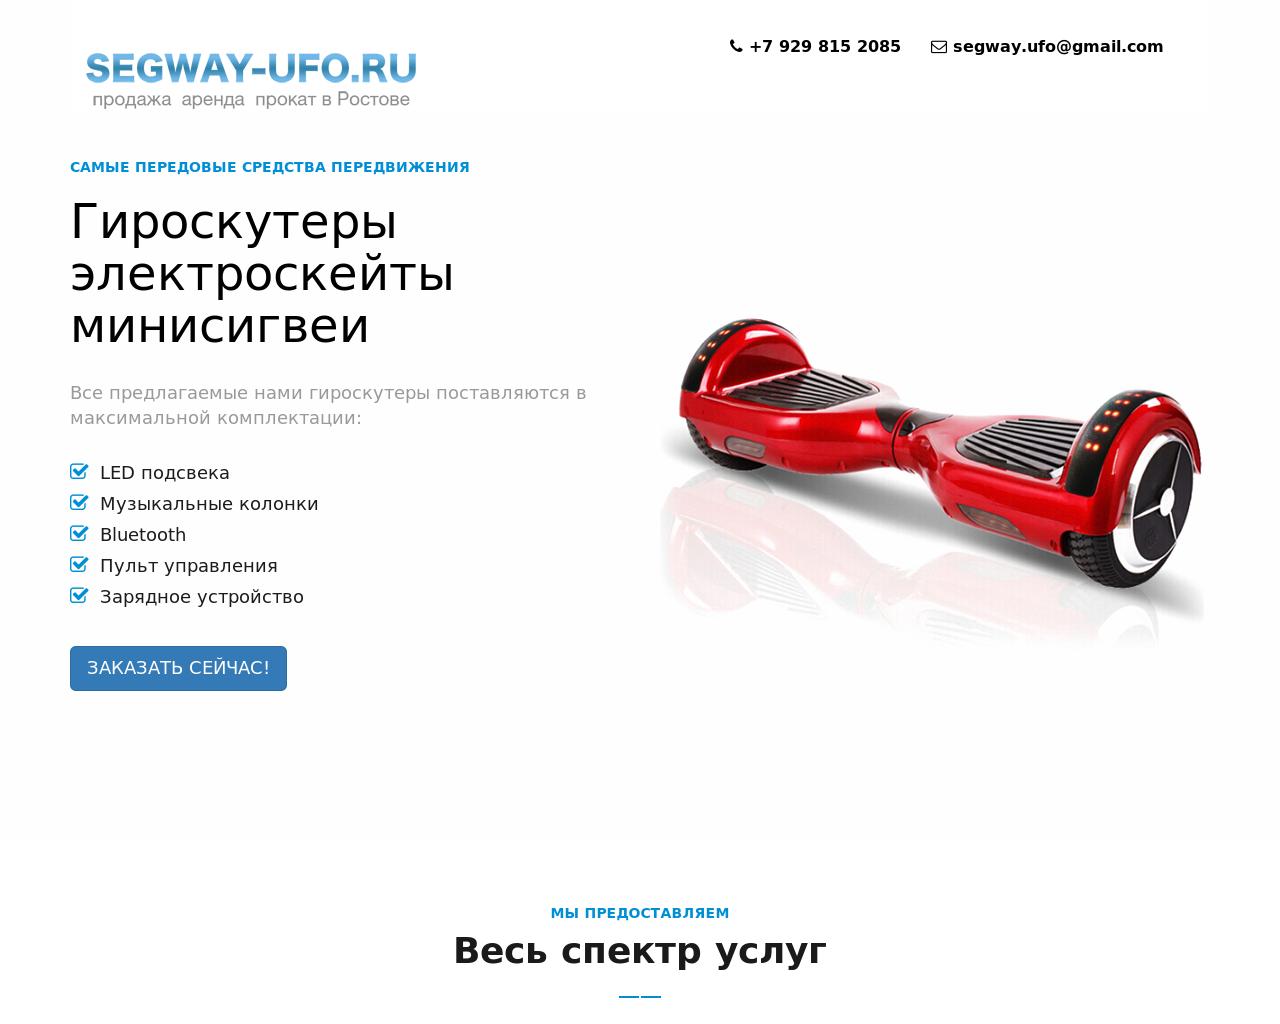 Изображение сайта segway-ufo.ru в разрешении 1280x1024